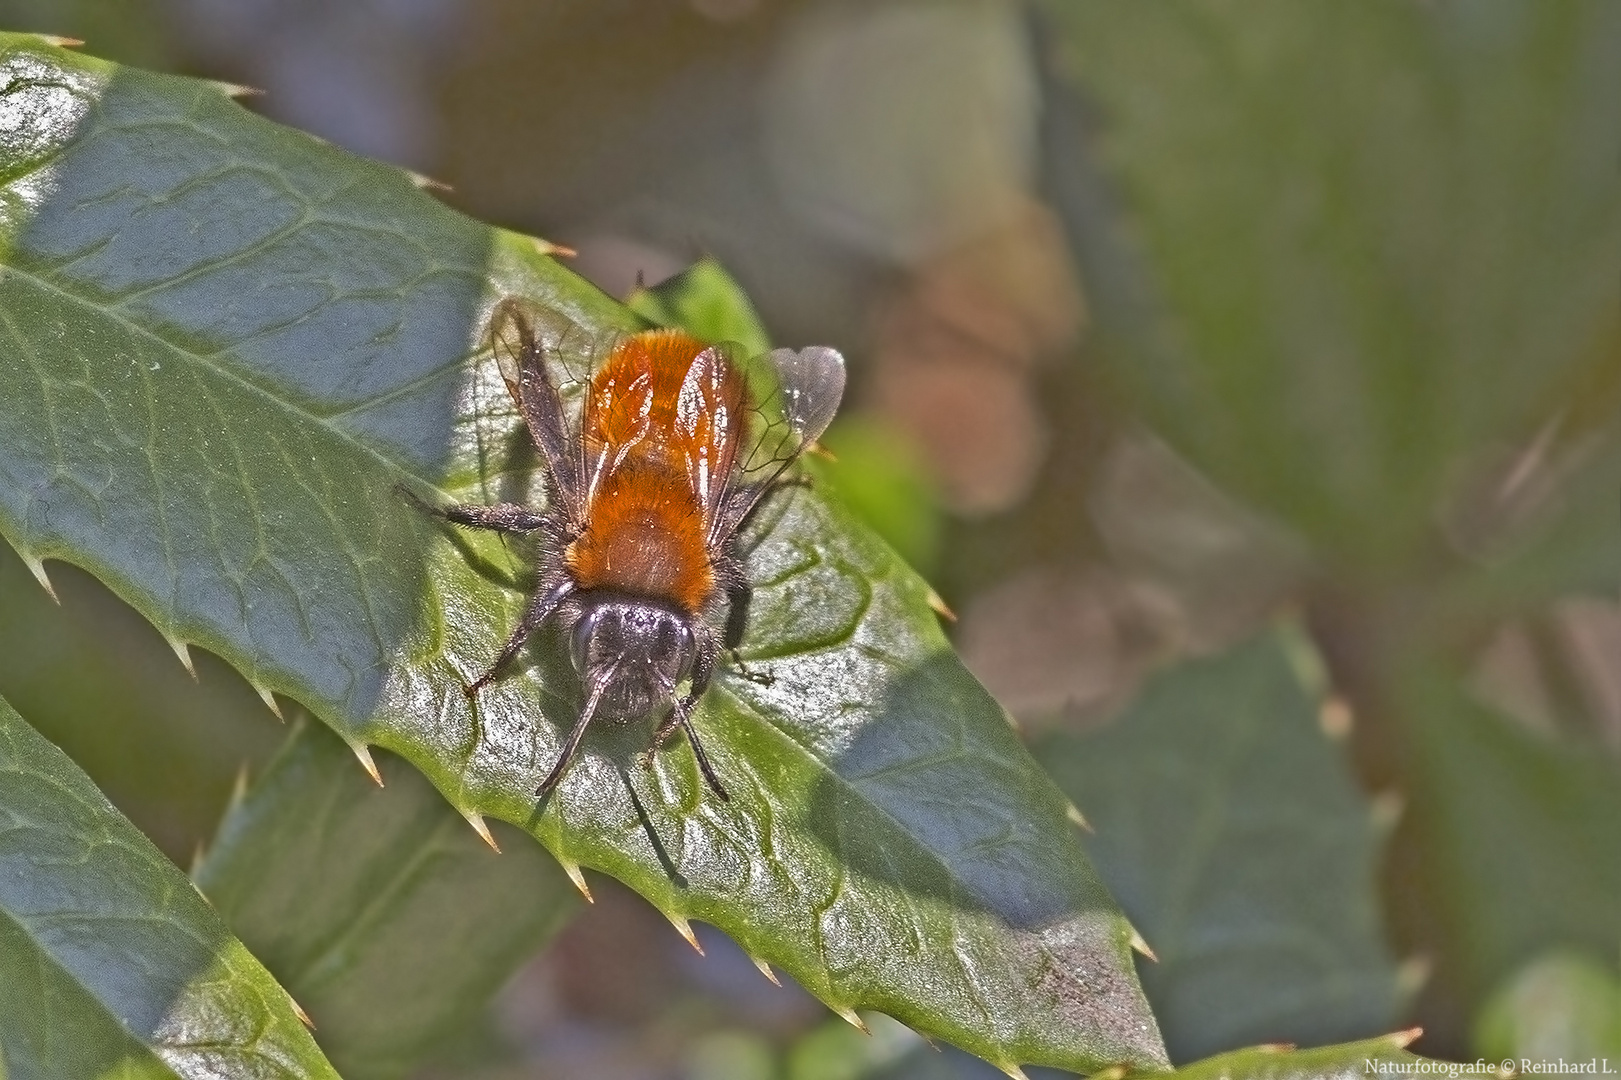  Projekt " Insekten in unserem Garten " : Andrena fulva